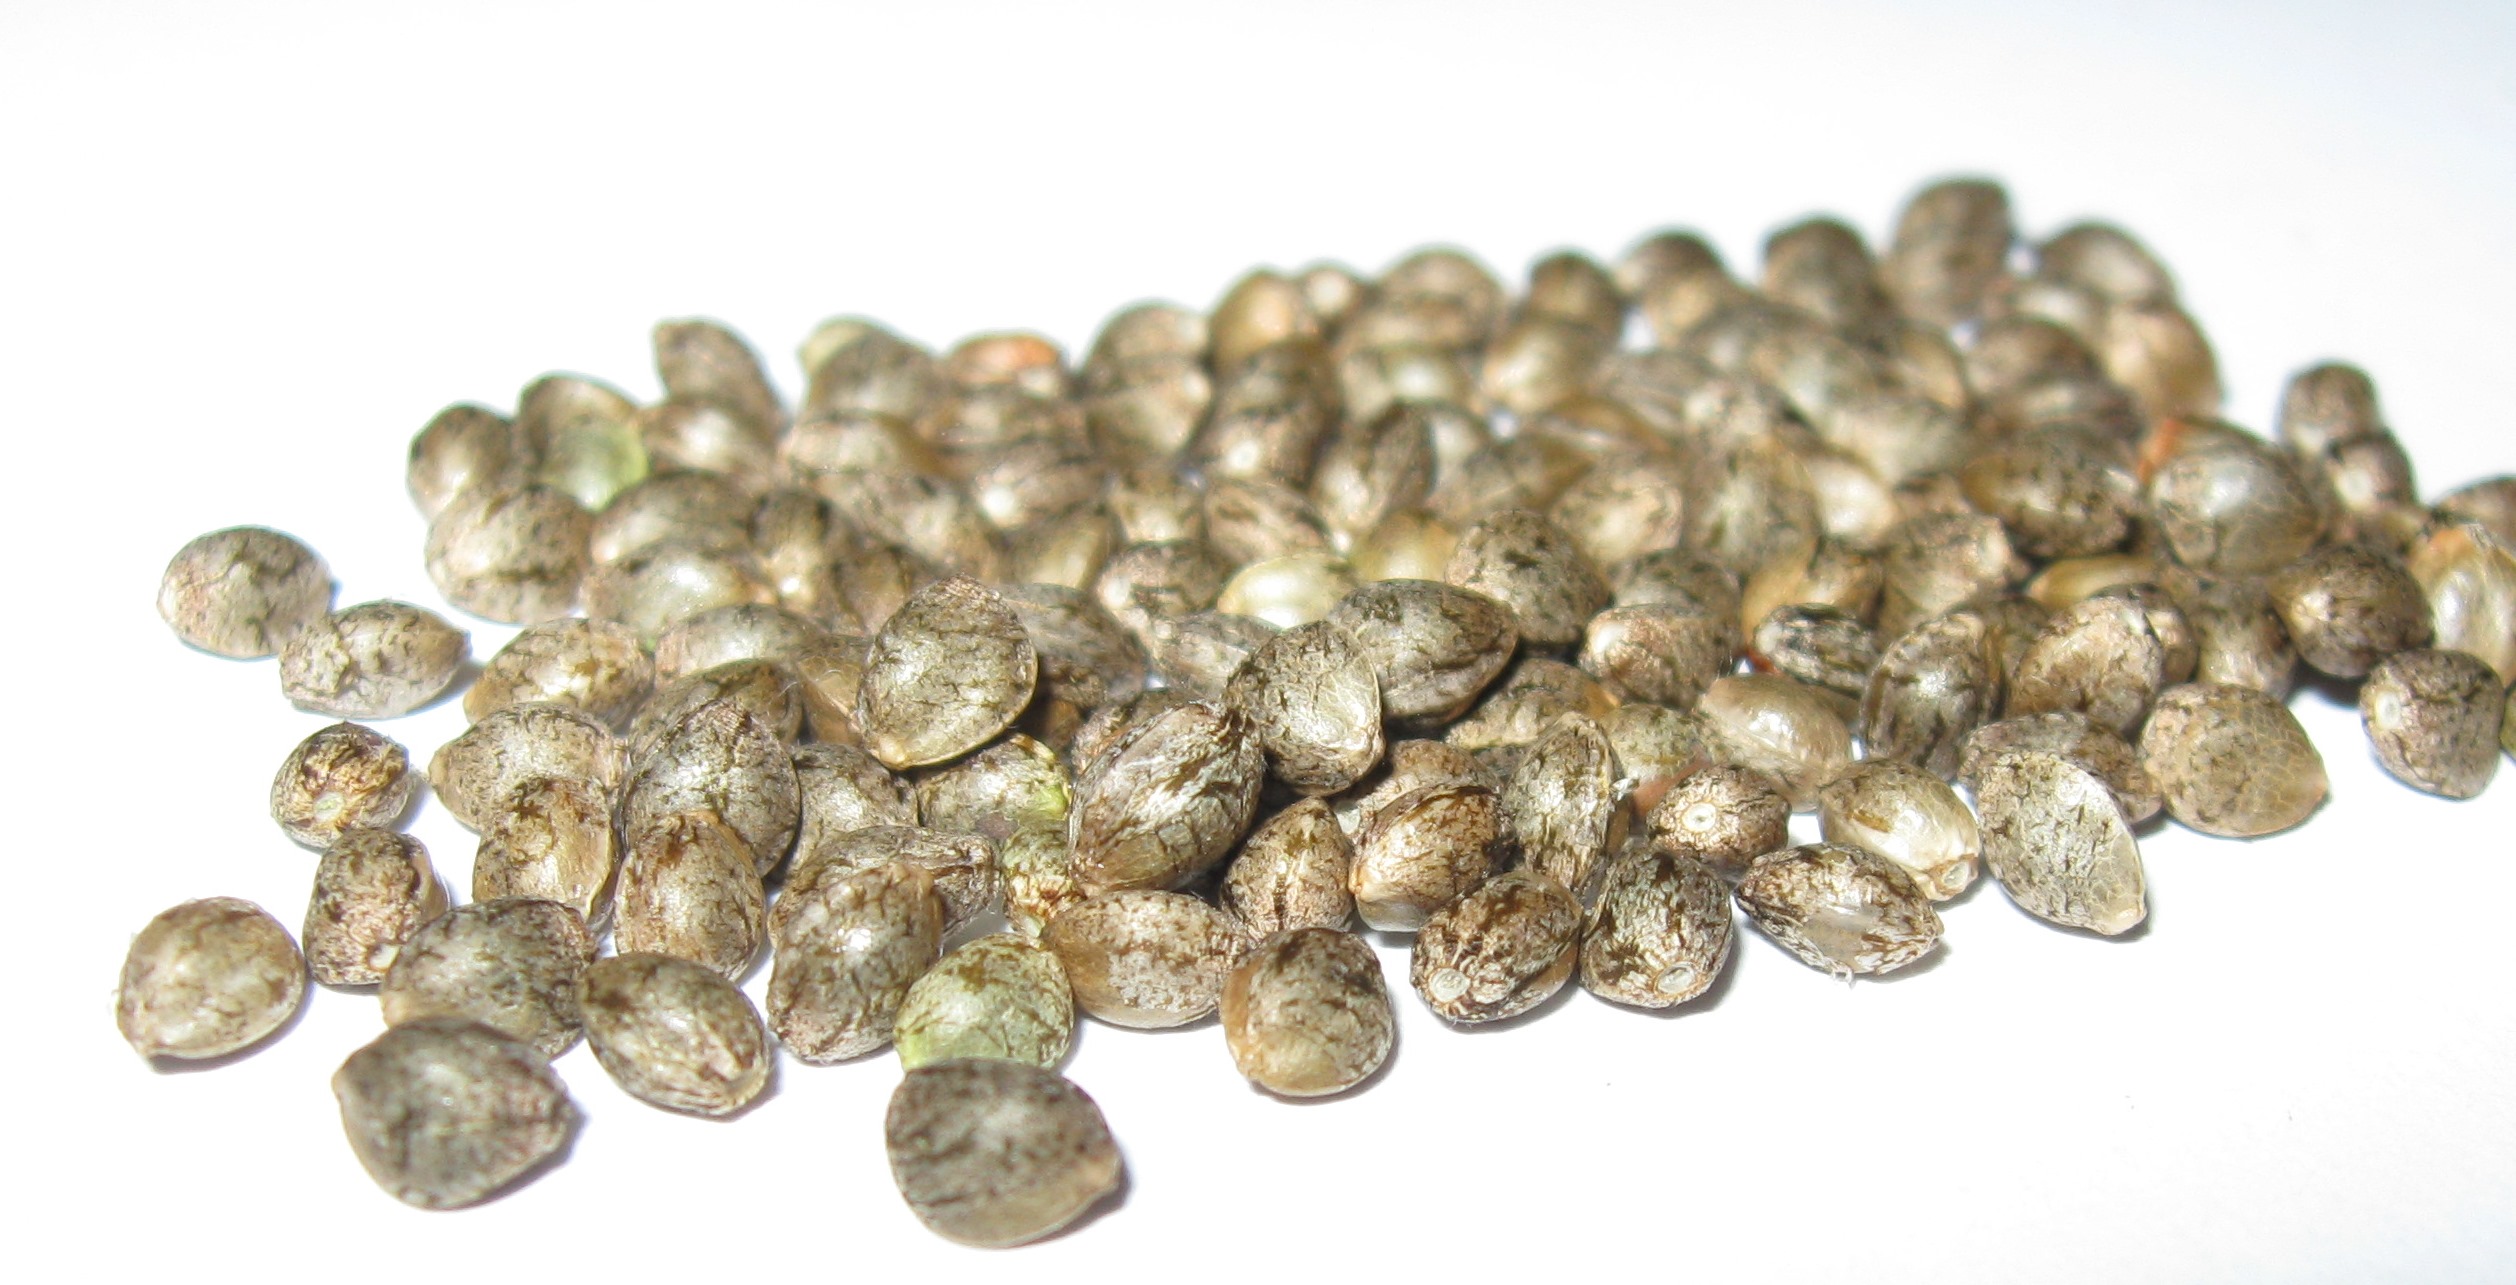 cannabis-seeds-germination